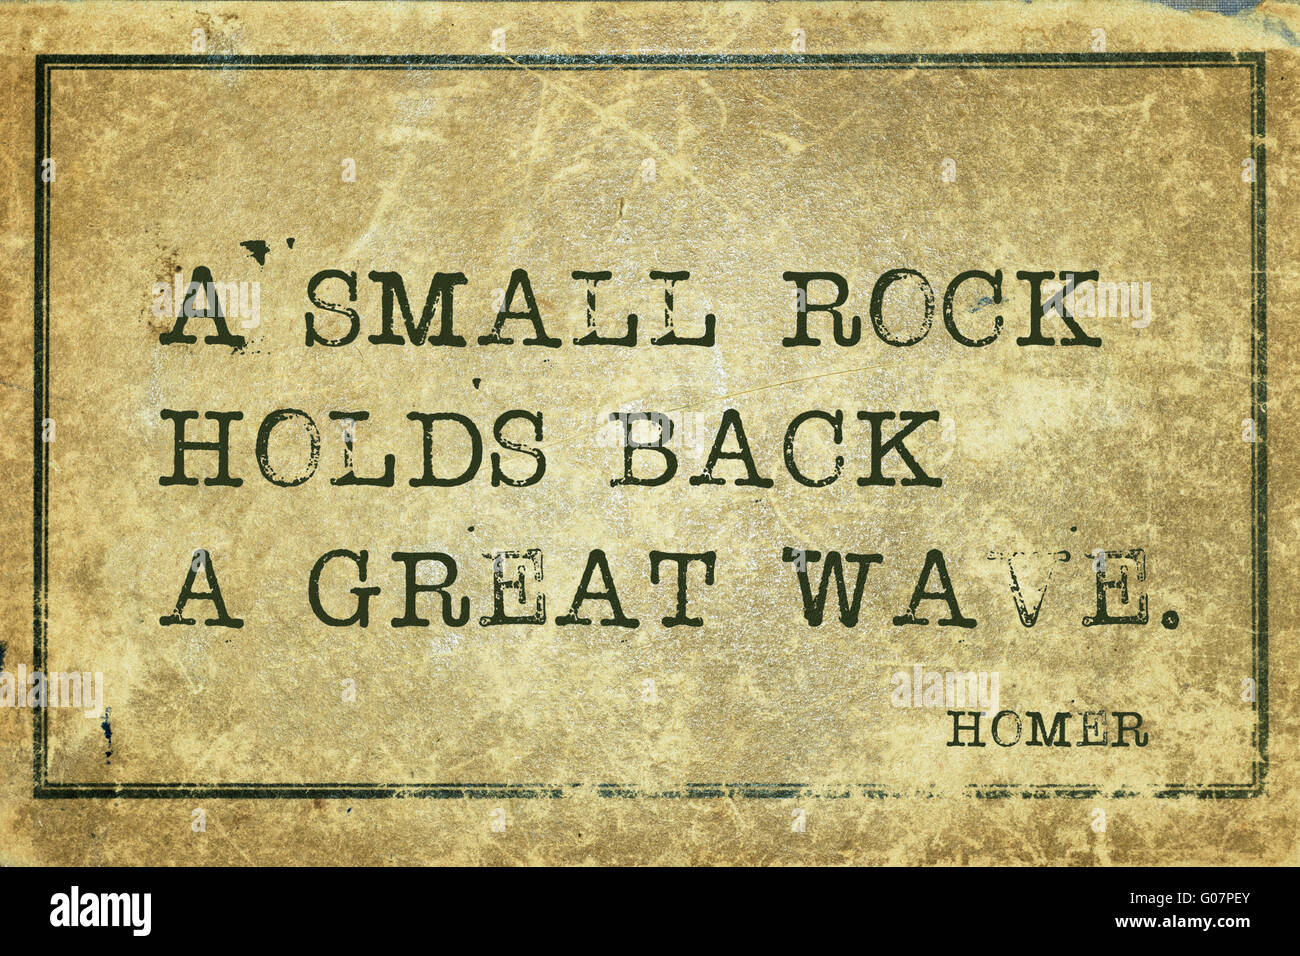 Una piccola roccia trattiene una grande onda - antico poeta greco Homer preventivo stampato su grunge cartone vintage Foto Stock